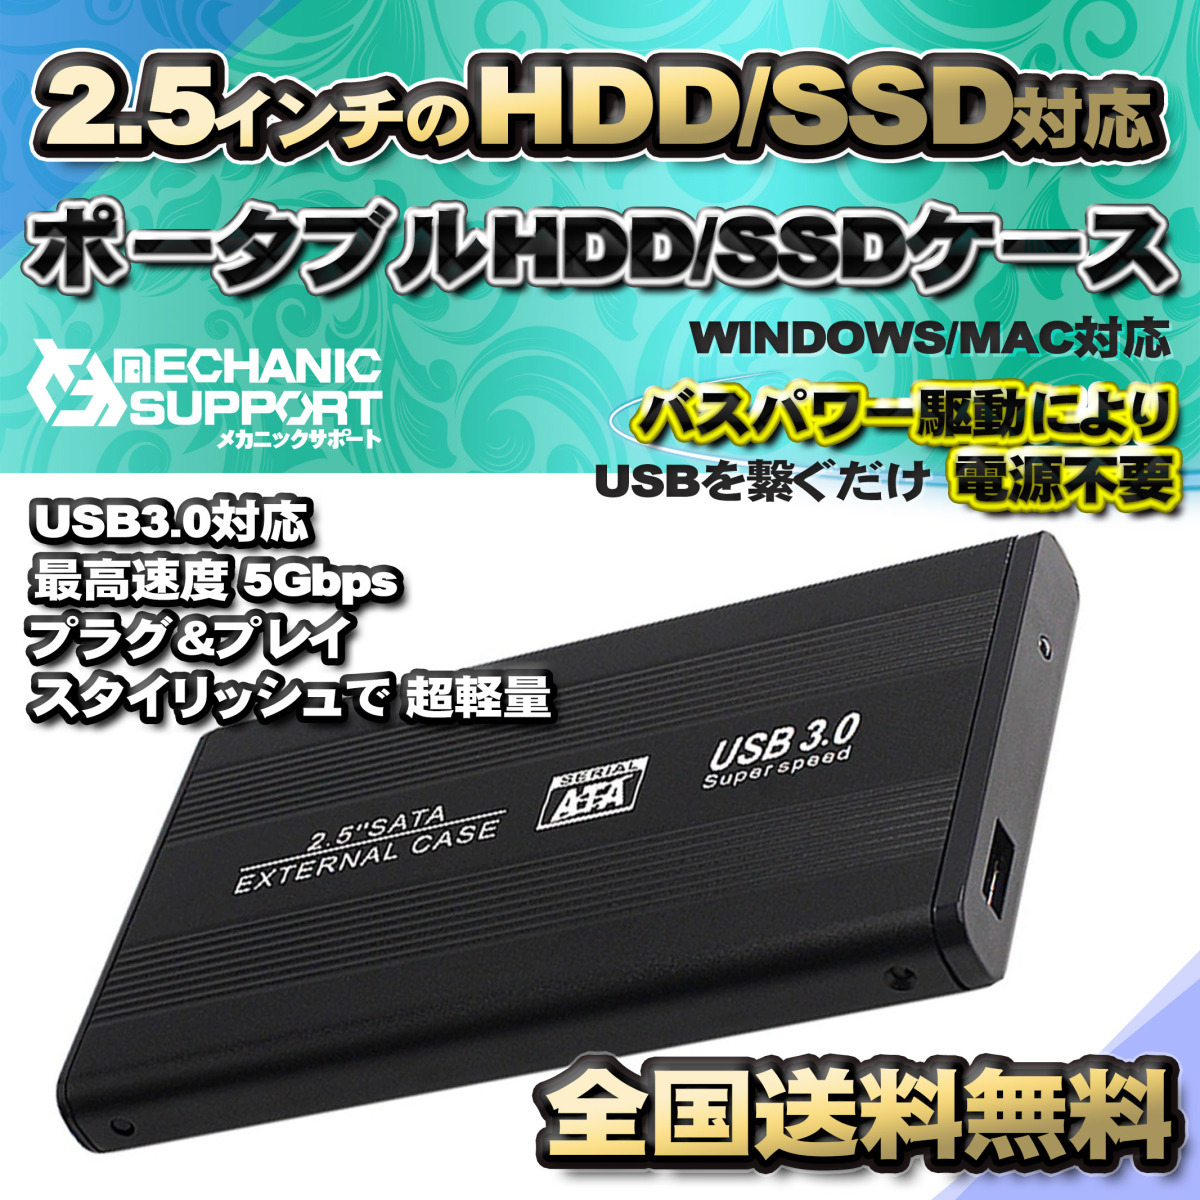 [USB3.0 соответствует ][ aluminium кейс ] 2.5 дюймовый HDD SSD жесткий диск установленный снаружи SATA 3.0 USB подключение [ черный ]